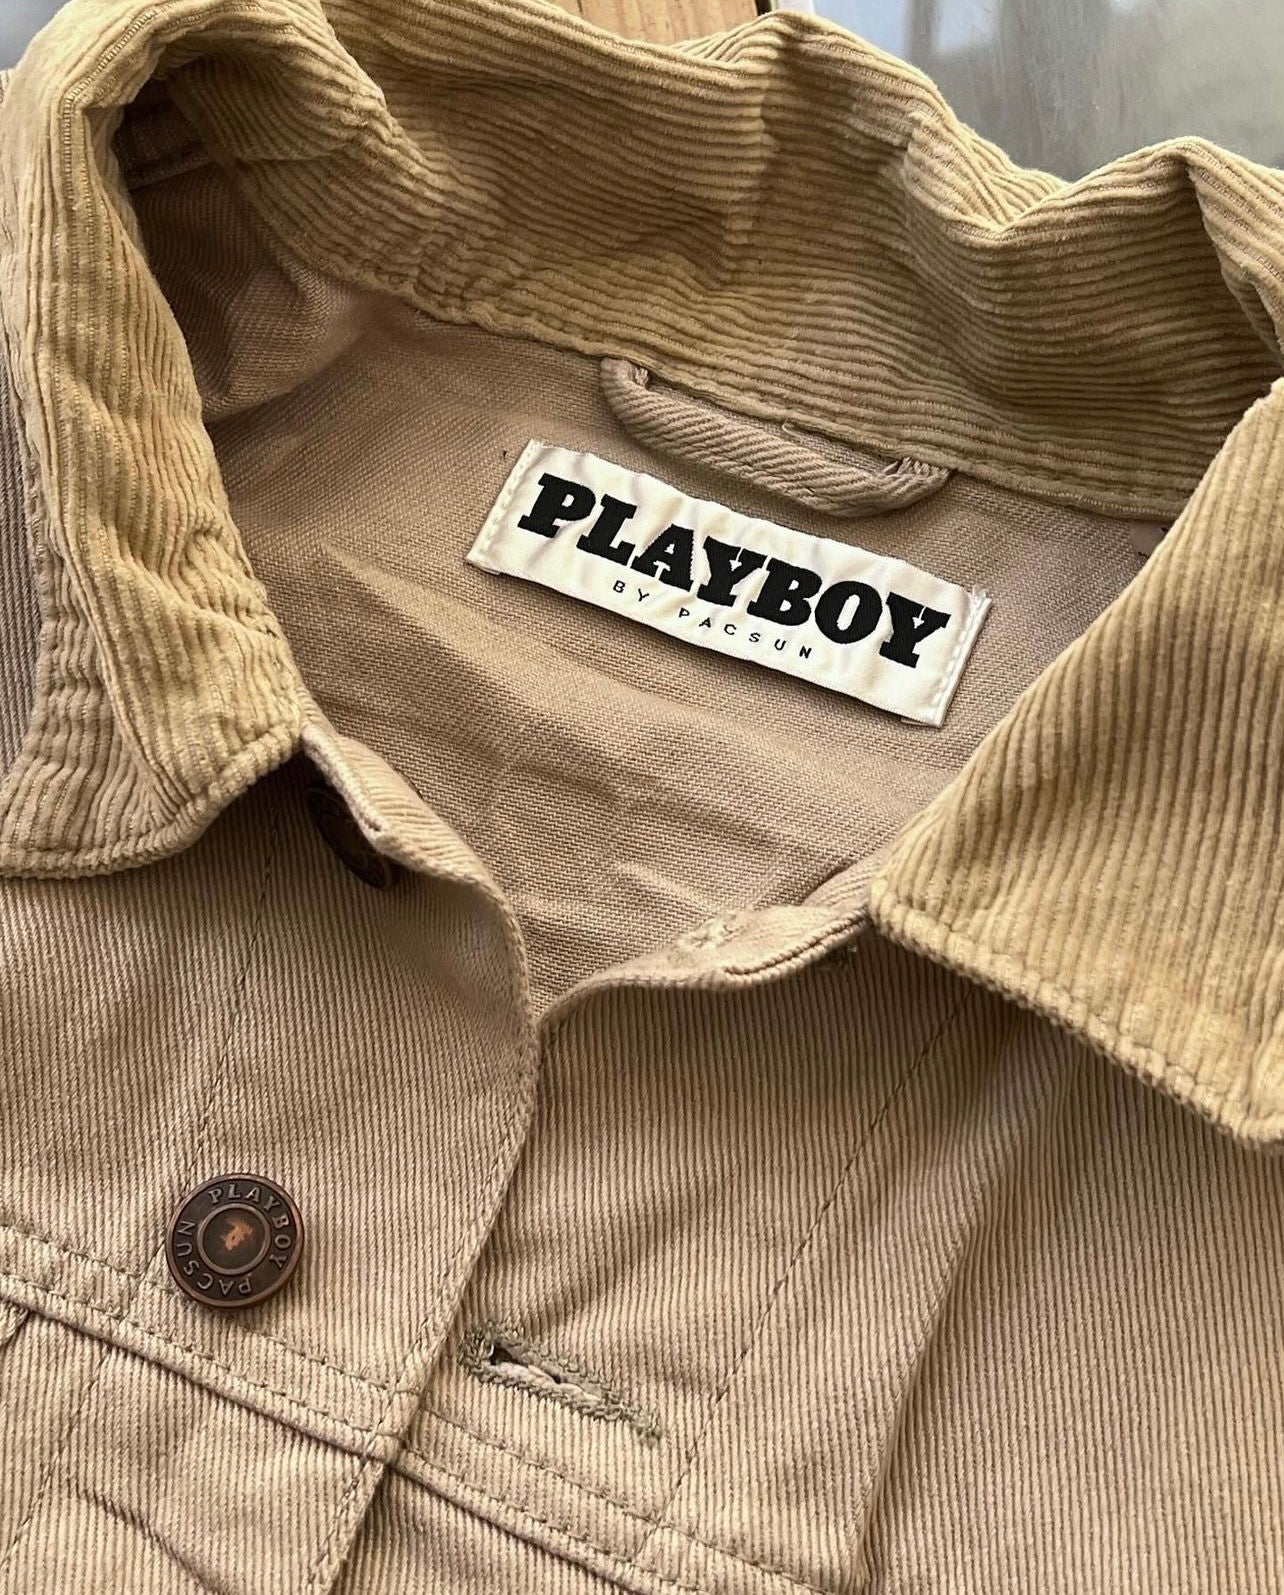 Playboy jacket